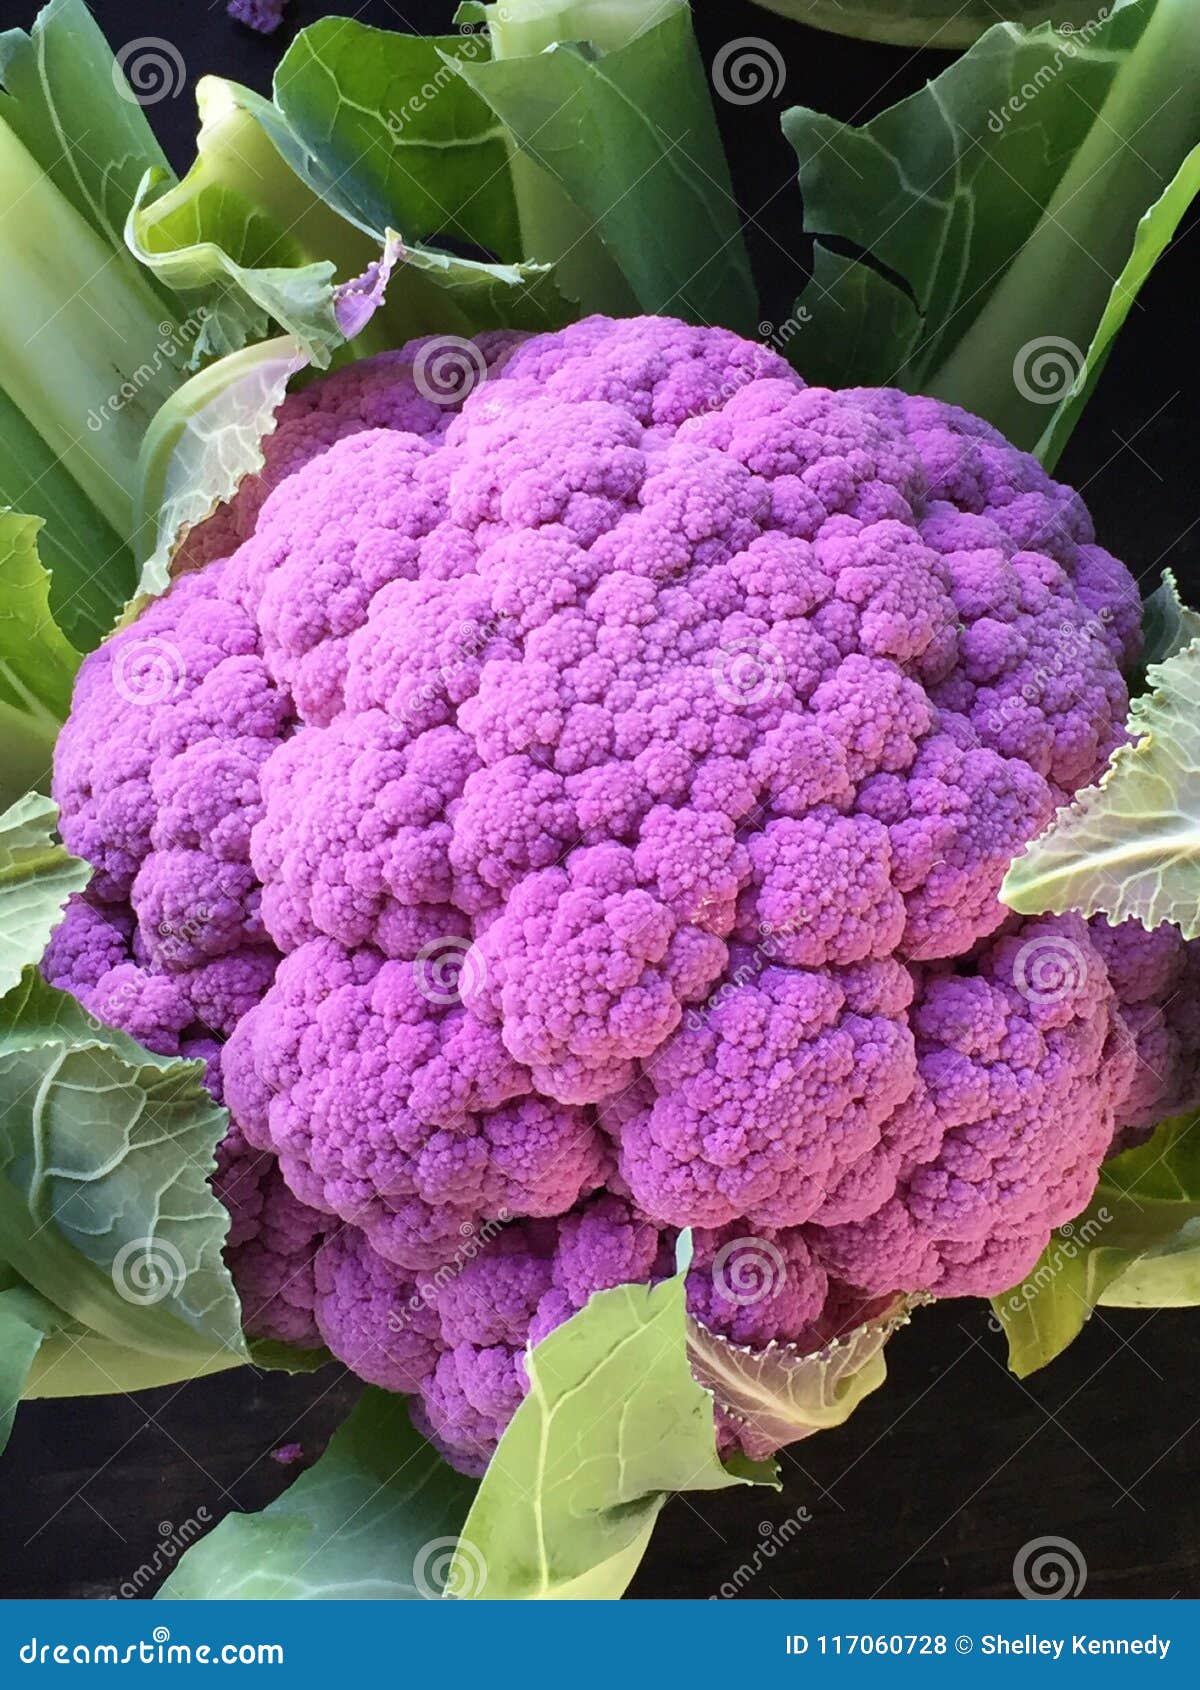 紫色花椰菜库存照片 图片包括有关闭 找到 紫色 市场 农夫 花椰菜